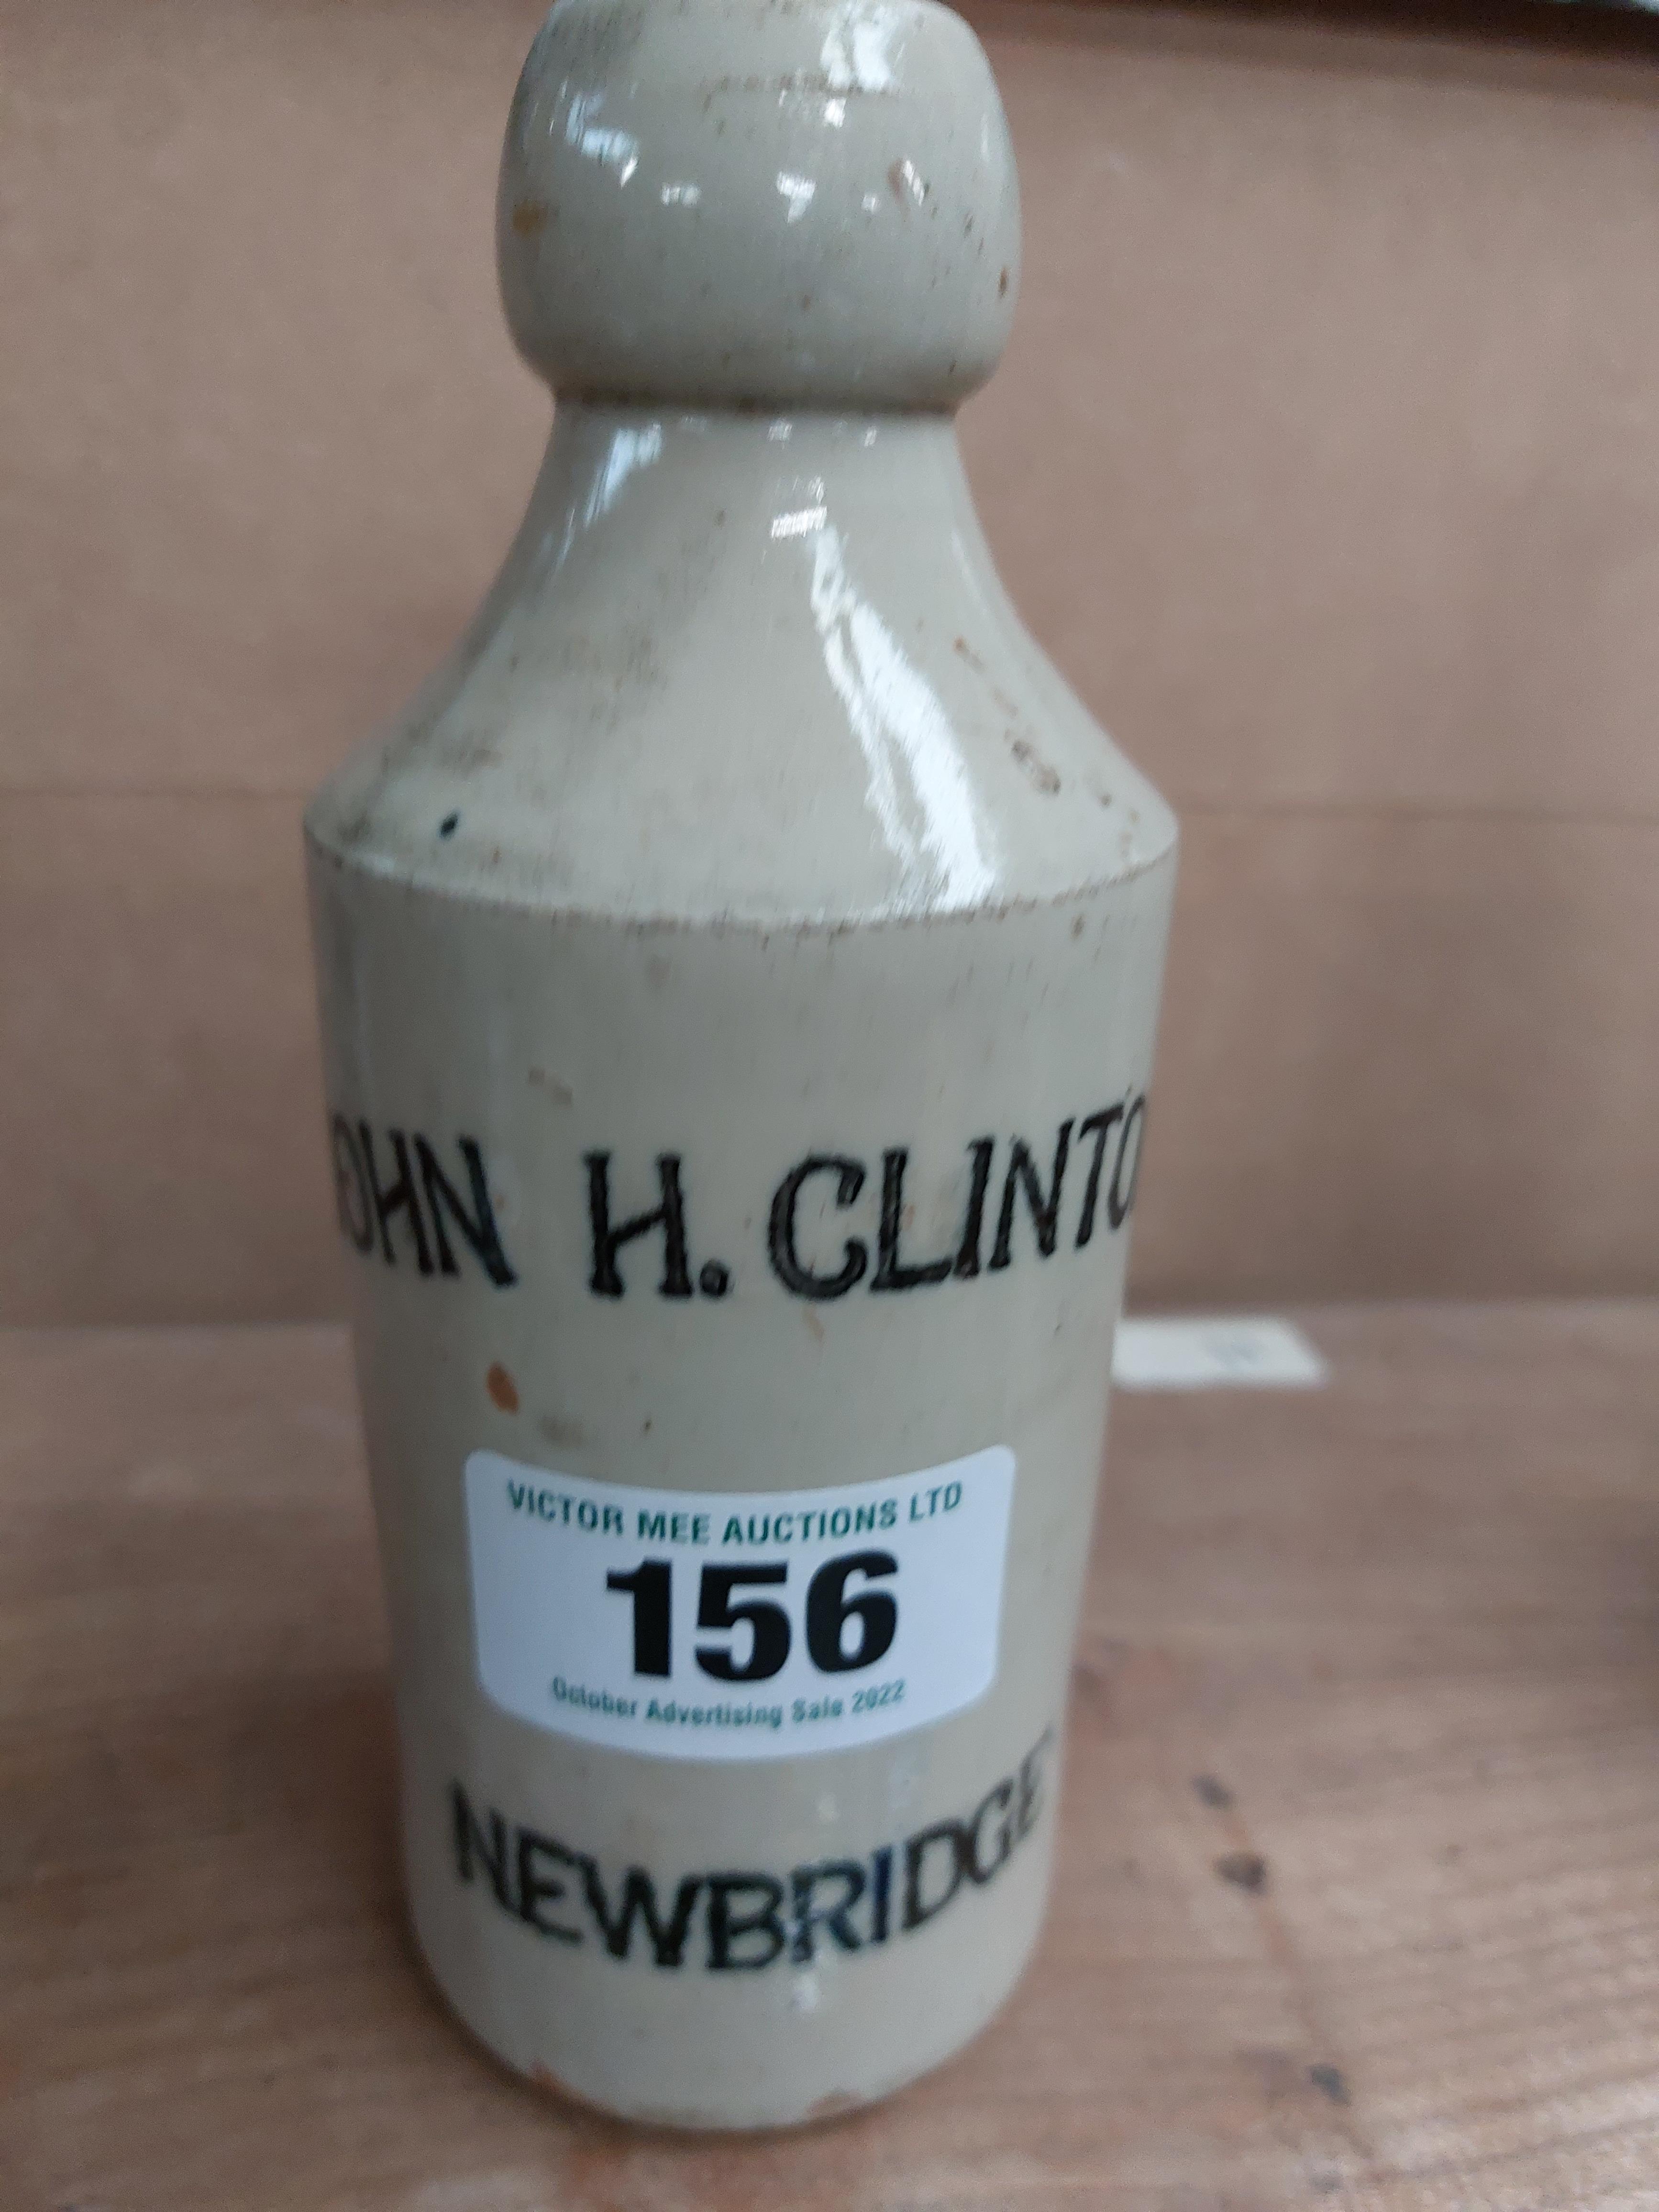 John H Clinton Newbridge stoneware Ginger beer bottle. {19 cm H x 7 cm Dia}.